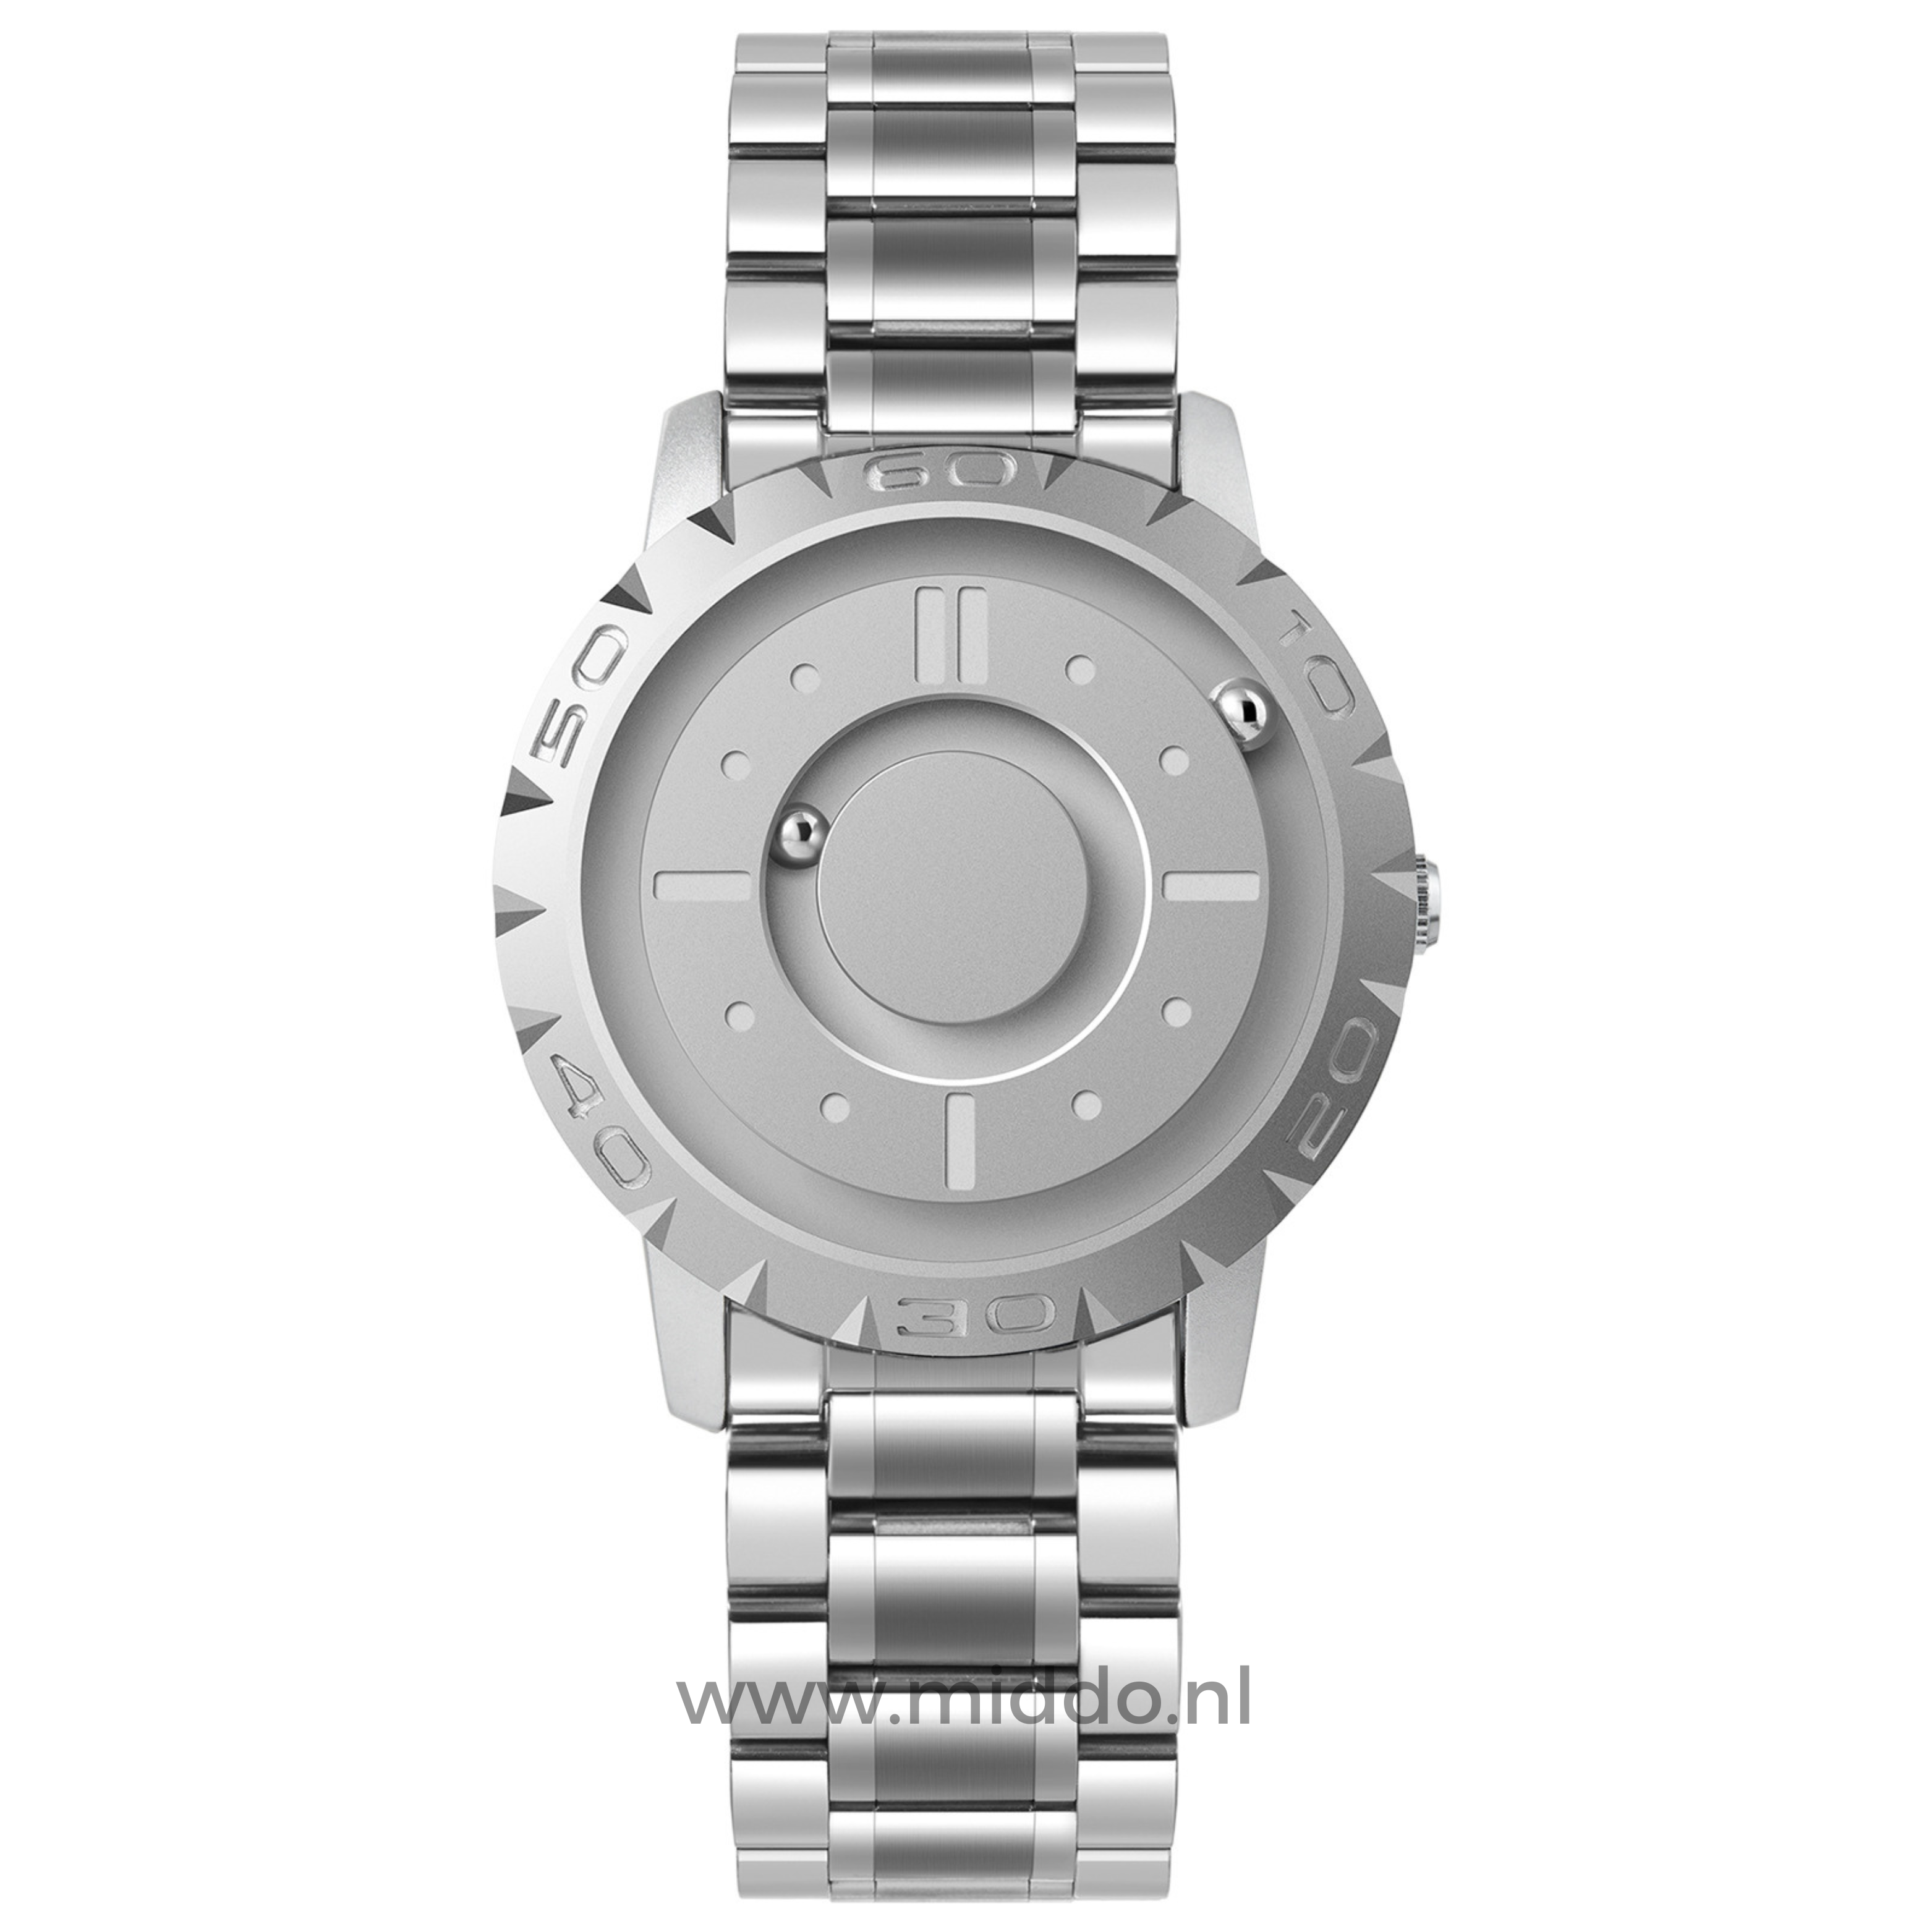 Zilver horloge met stalen band en minimalistisch ontwerp.